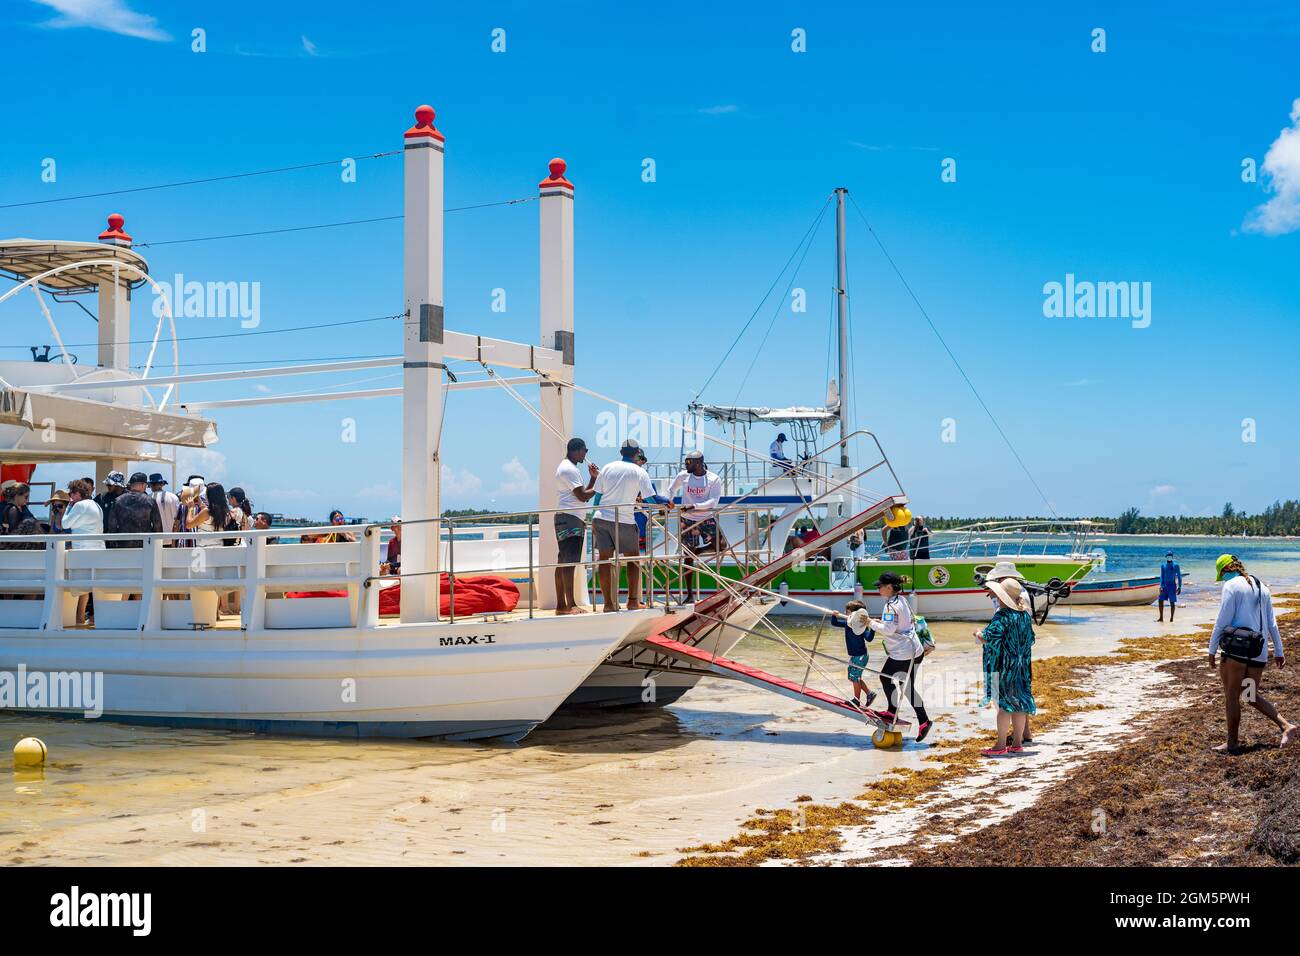 Punta Cana, Dominikanische Republik - 3. August 2021: Tourist Board ein Freizeitboot in Punta Cana Dominikanische Republik. Stockfoto